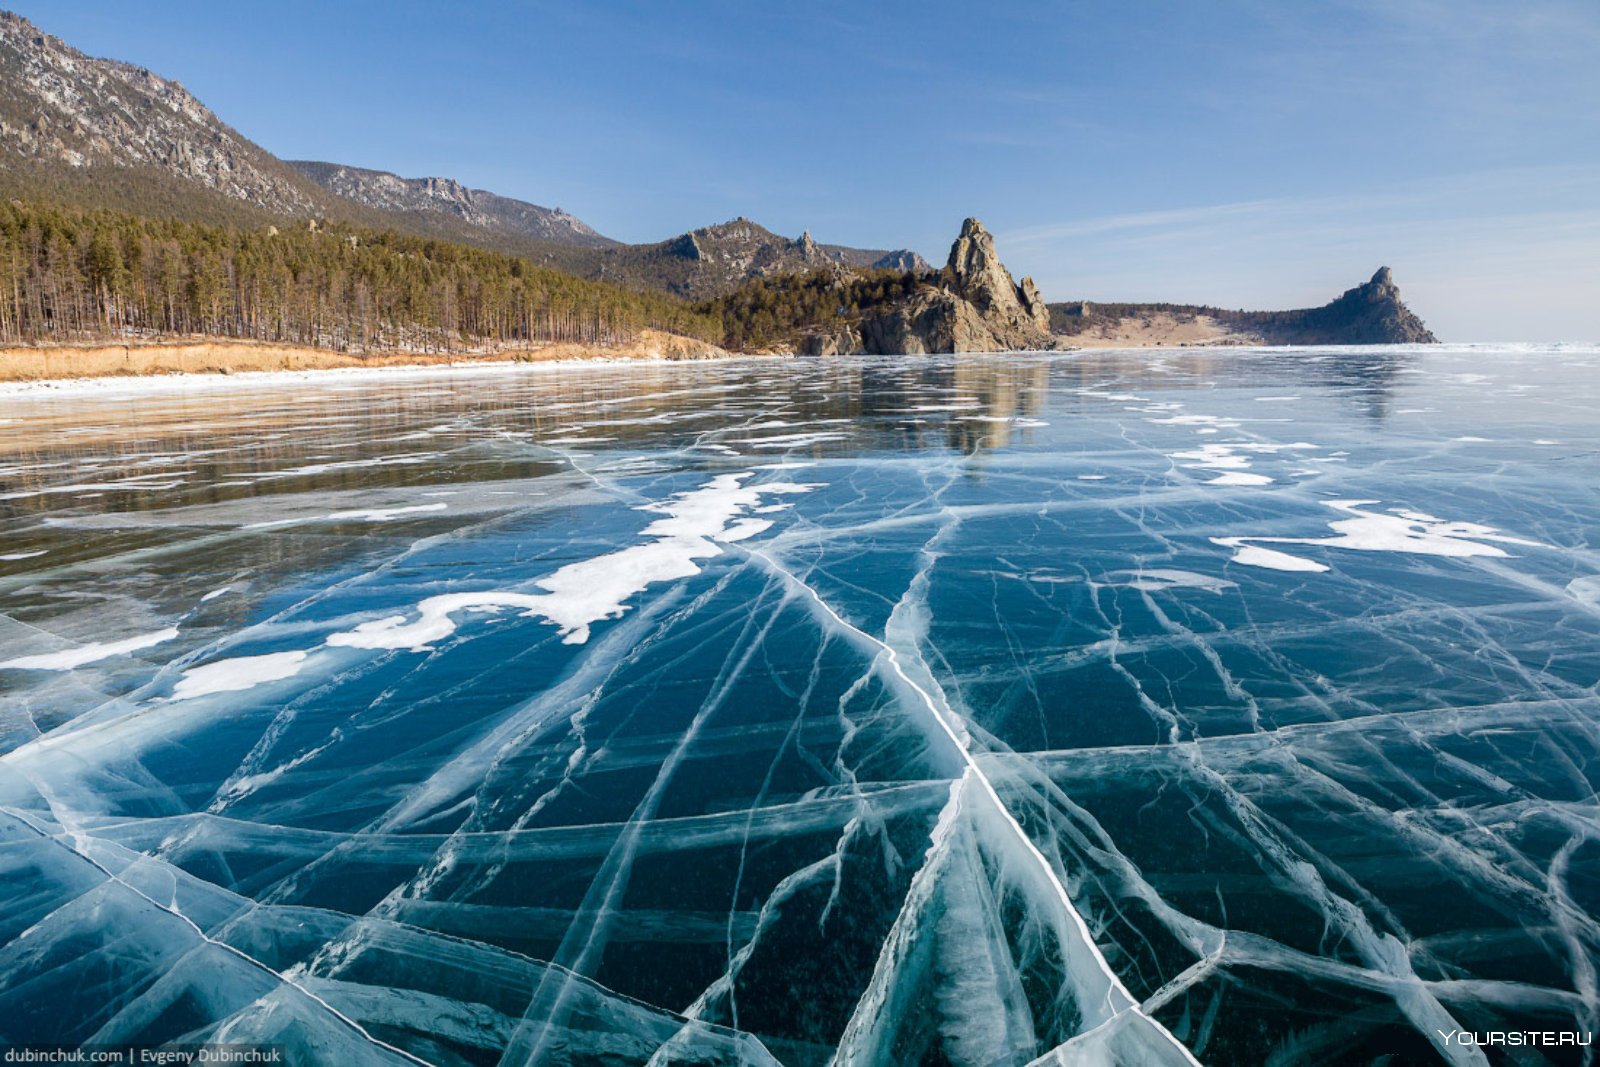 Озеро качество воды. Озеро Байкал. Байкал Иркутская область. Озеро Байкал, Восточная Сибирь. Восточная Сибирь Байкал.